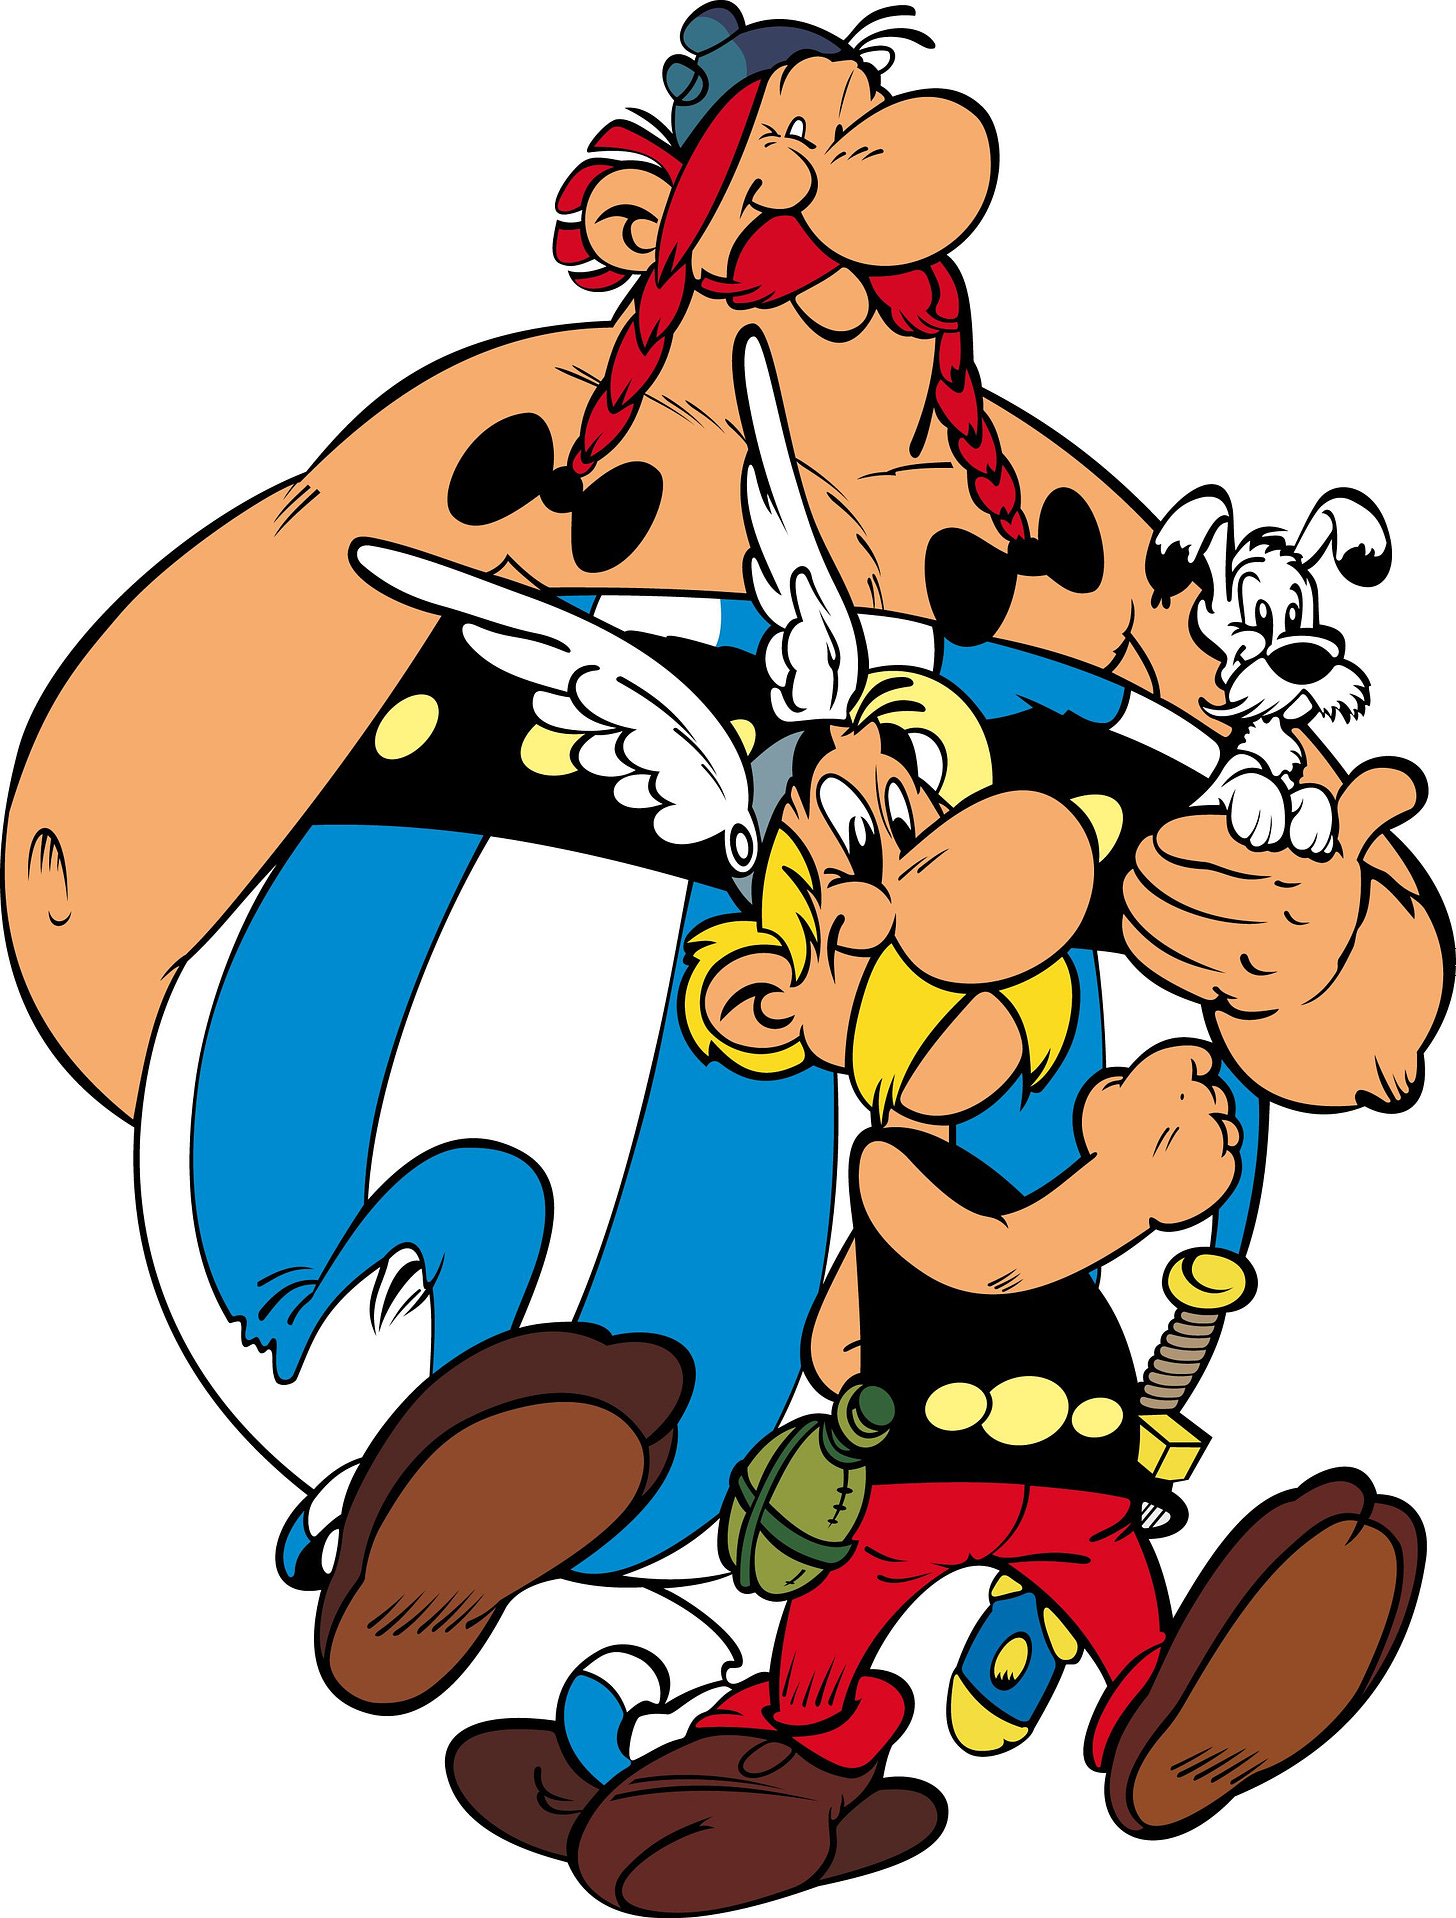 Asterix y Obelix | Classic cartoon characters, Cartoon, Cartoon art